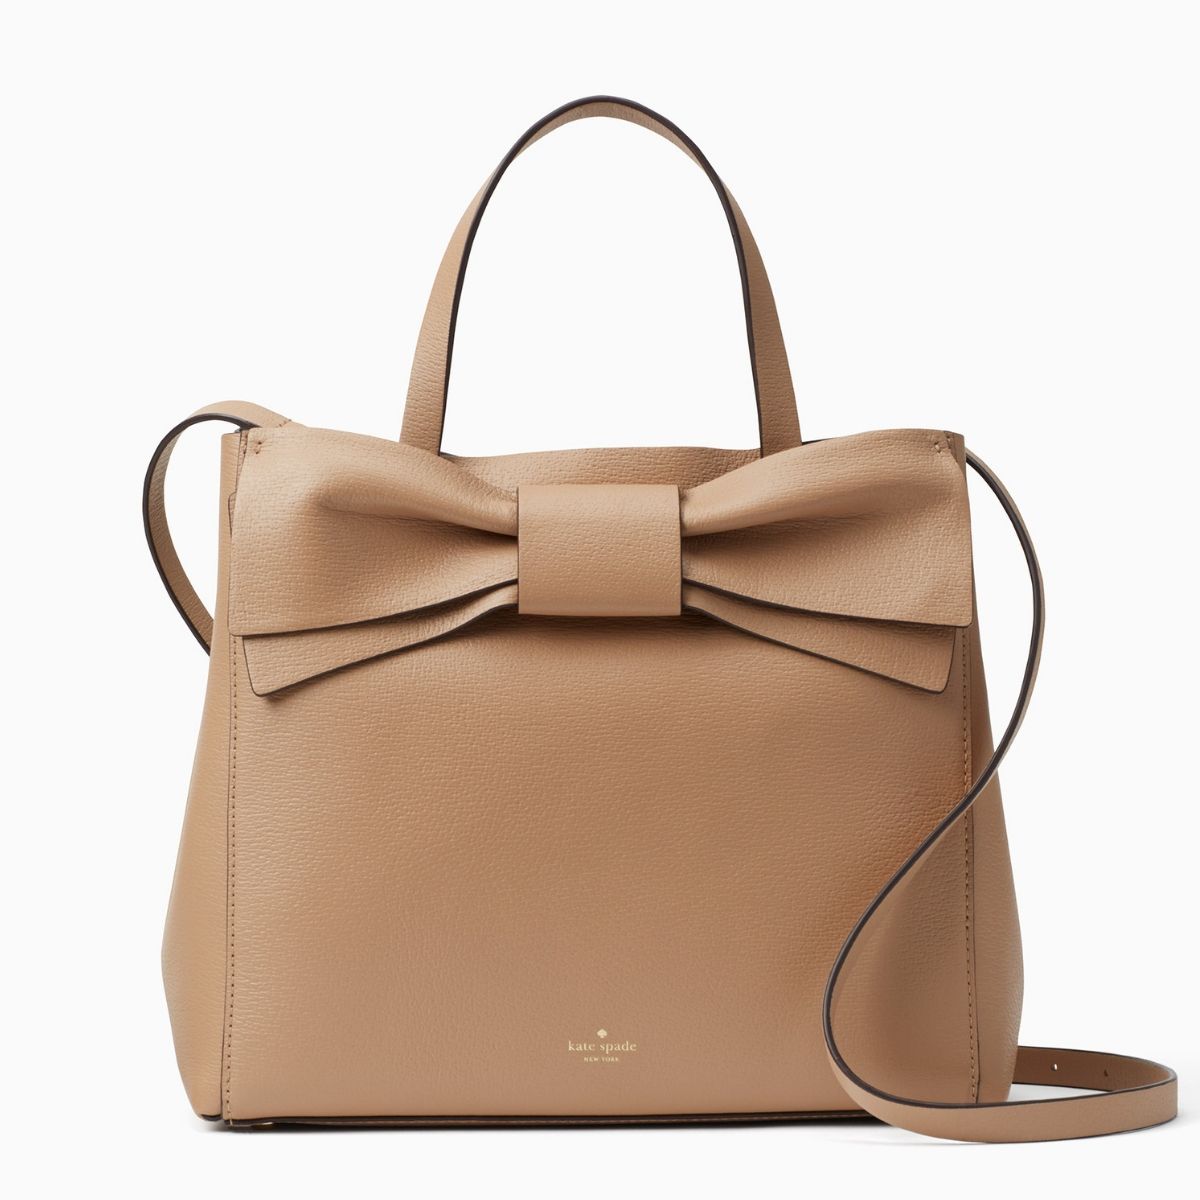 kate spade new york Satchel/Top Handle Bag Beige Bags & Handbags